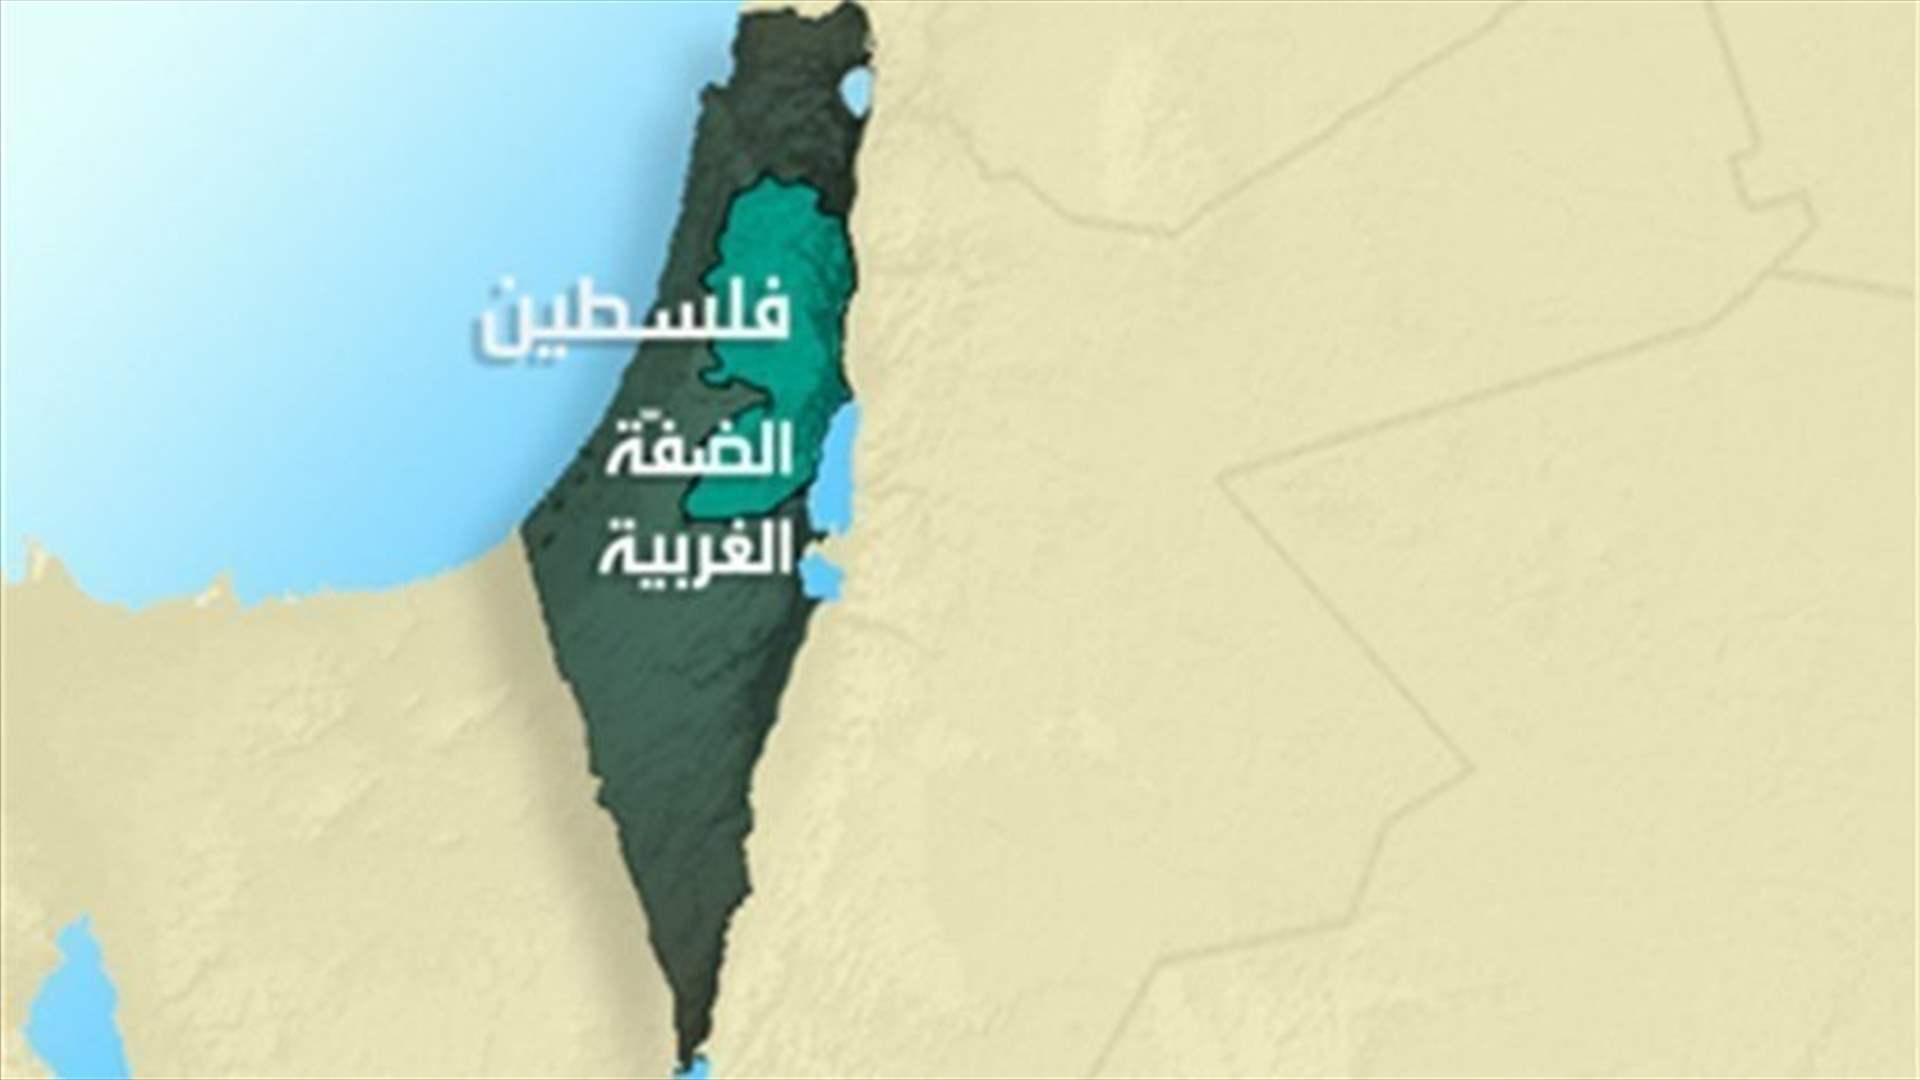 إصابة إسرائيليين أحدهما جروحه خطيرة في إطلاق نار بالضفة الغربية المحتلة